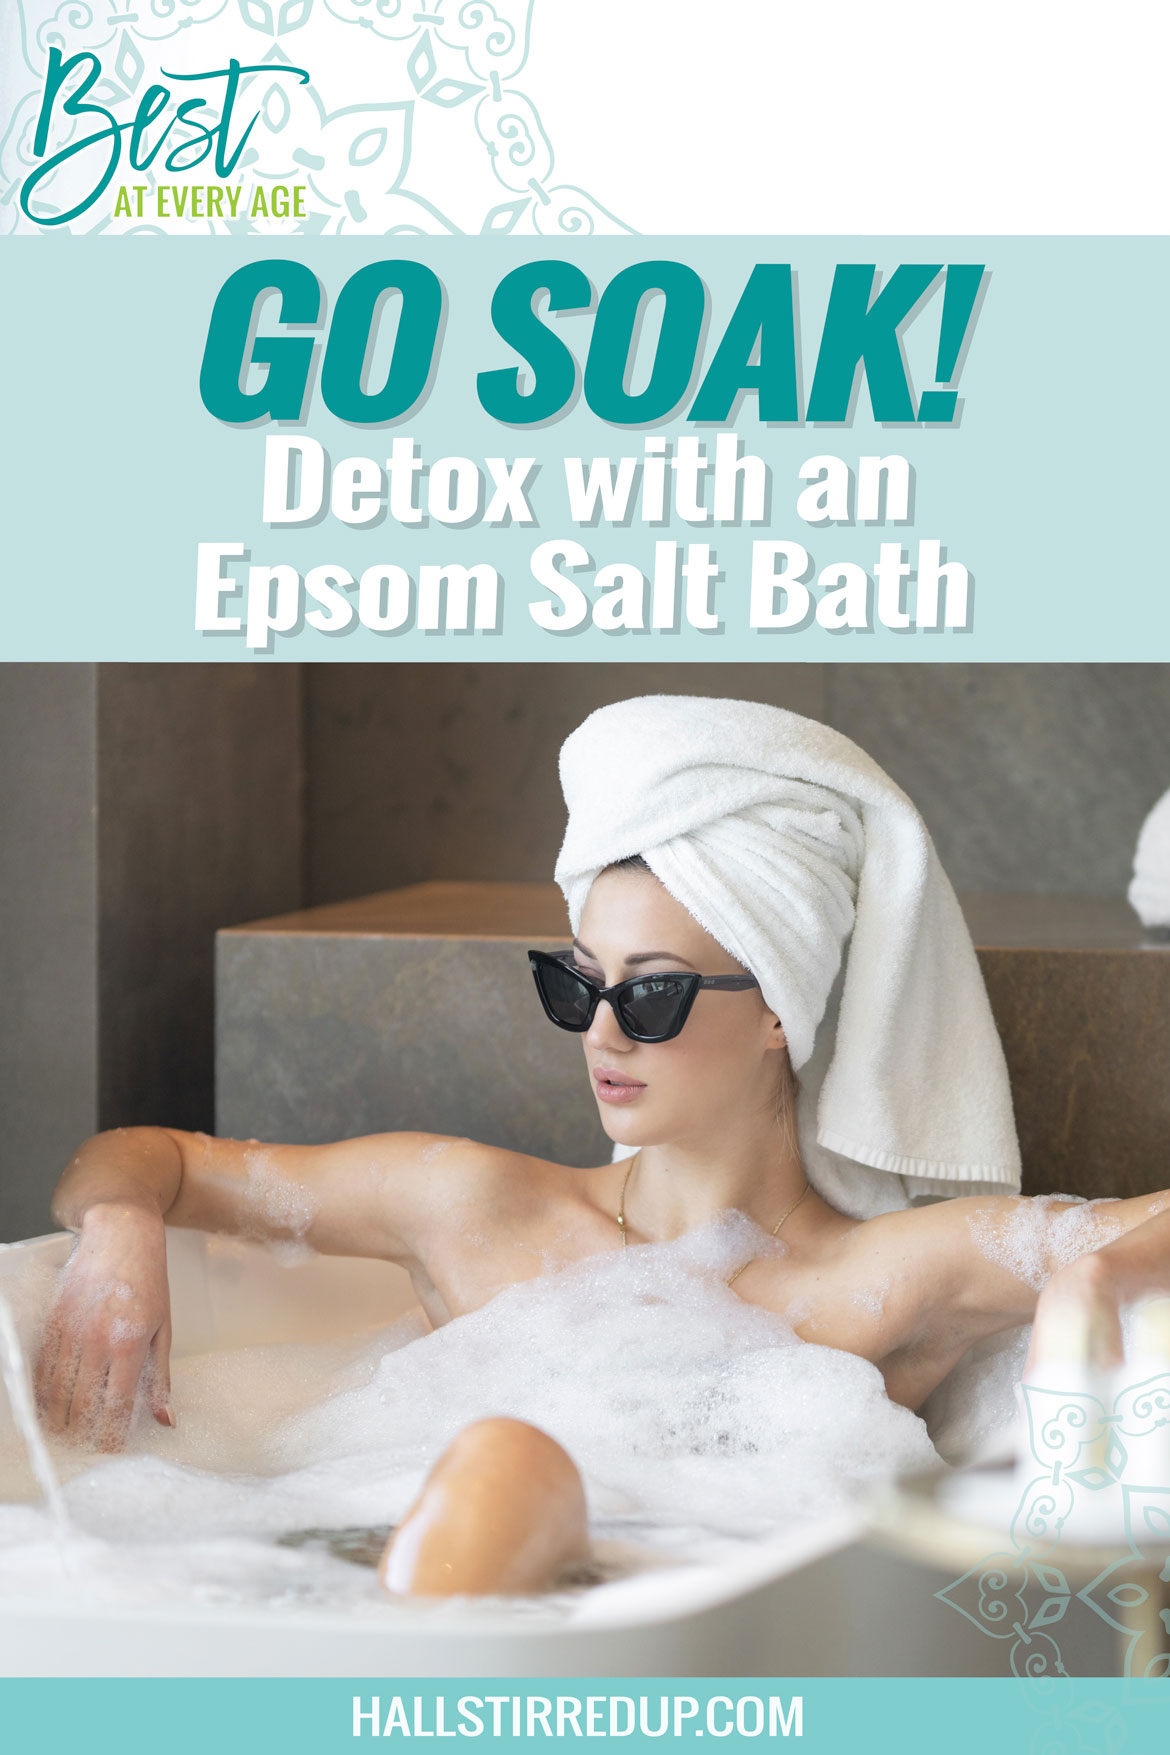 Go soak! Why you want to detox with an Epsom salt bath